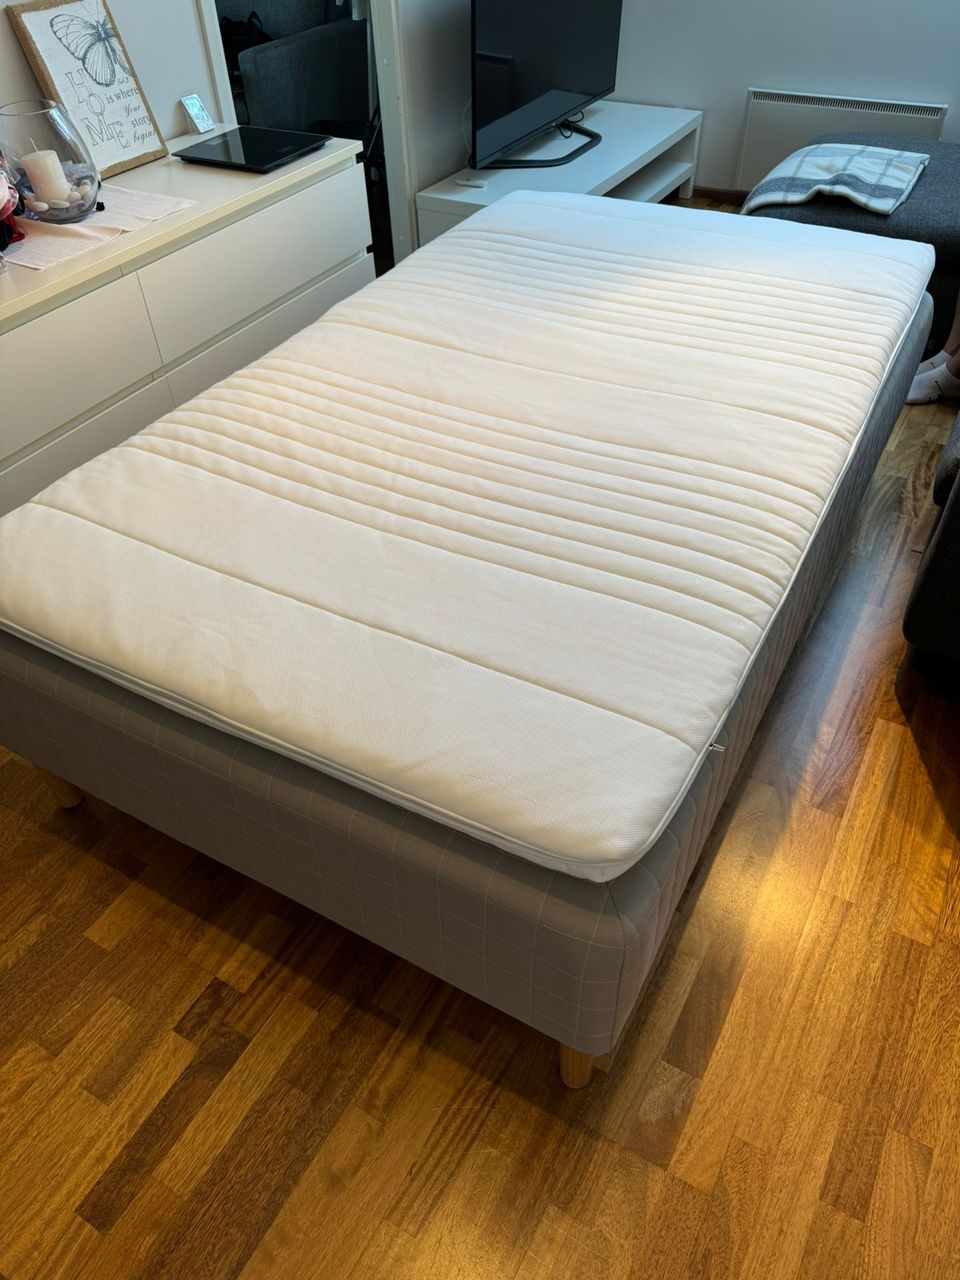 Ikea Skårer sänky + Tussöy sijauspatja 120cm leveä